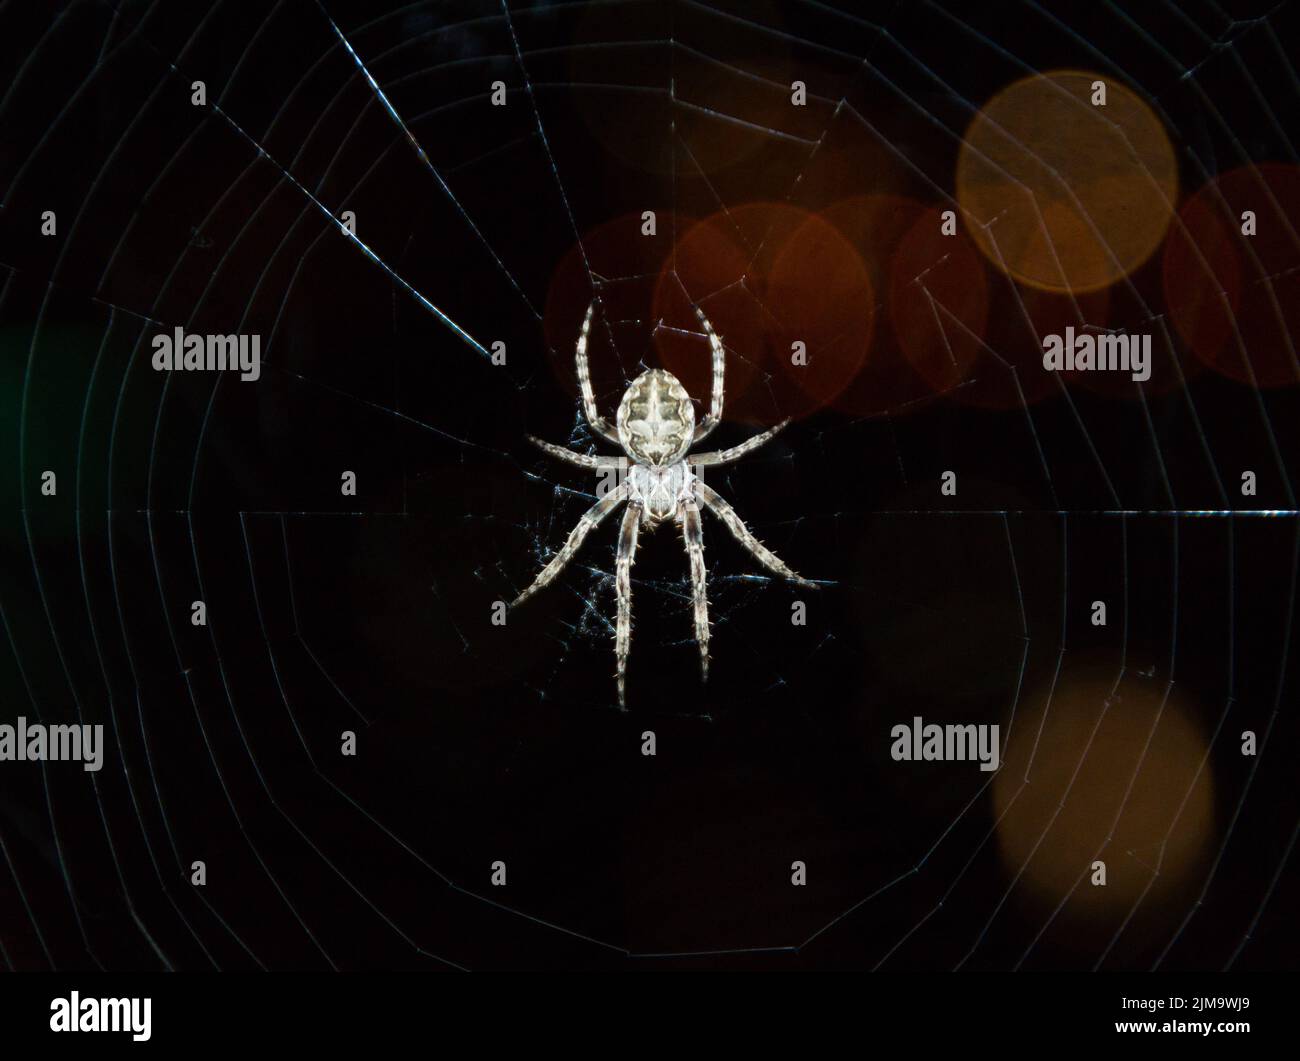 Un gros plan de l'araignée sclopetarius de Larinioides sur une toile d'araignée avec des lumières bokeh sur un fond sombre Banque D'Images